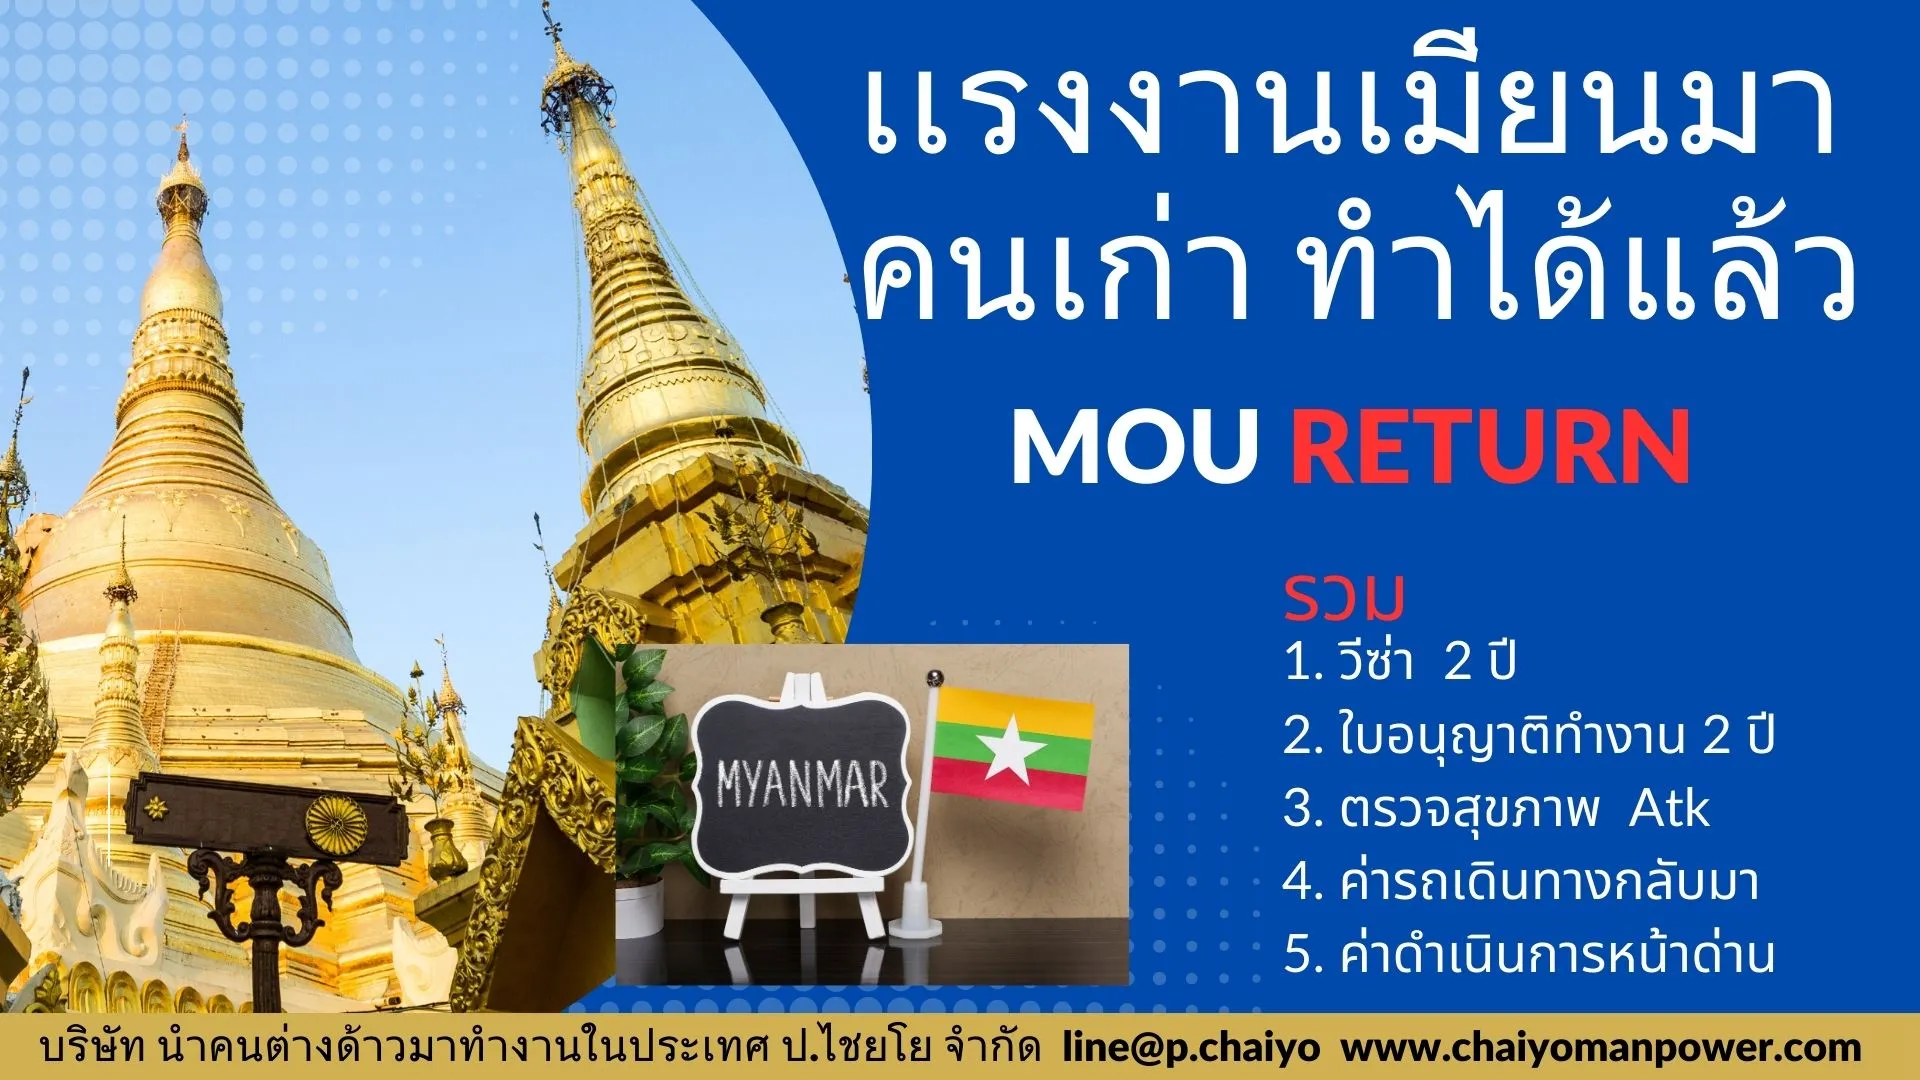 MOU-Return แรงงานพม่า อยากทำงานแบบถูกกฎหมาย ต้องทำอย่างไร